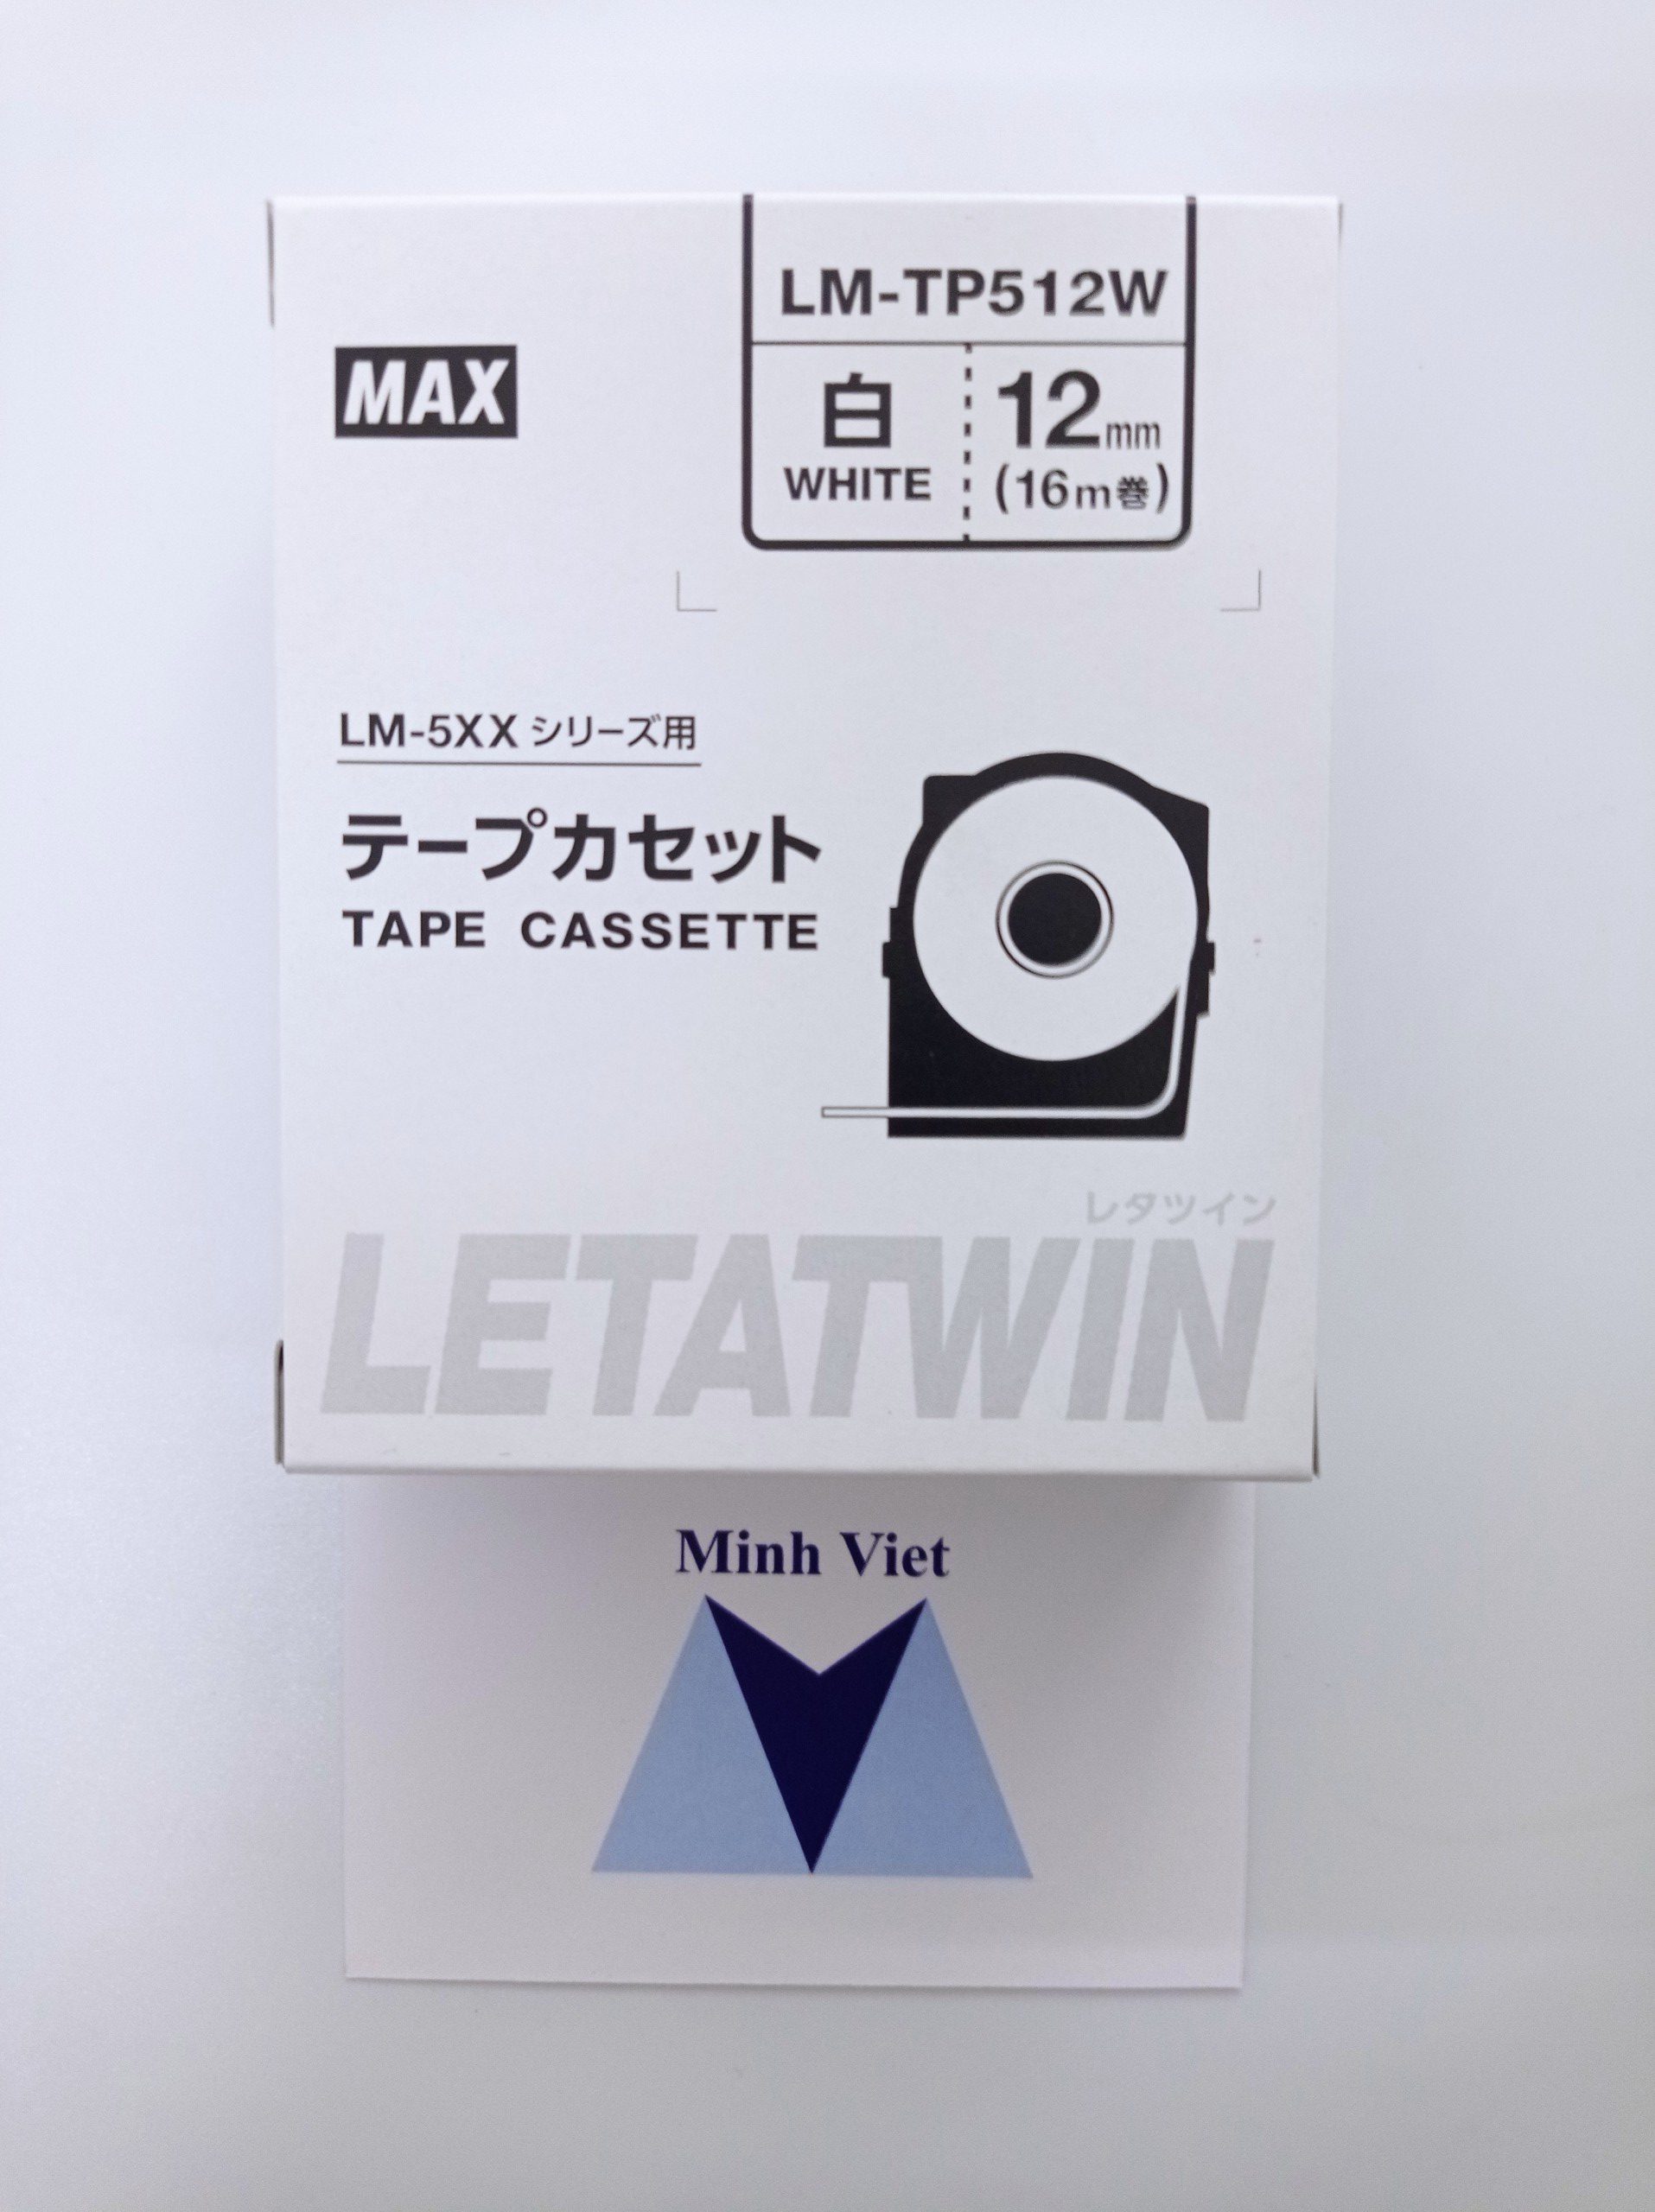 Băng nhãn in LM-TP512W MAX